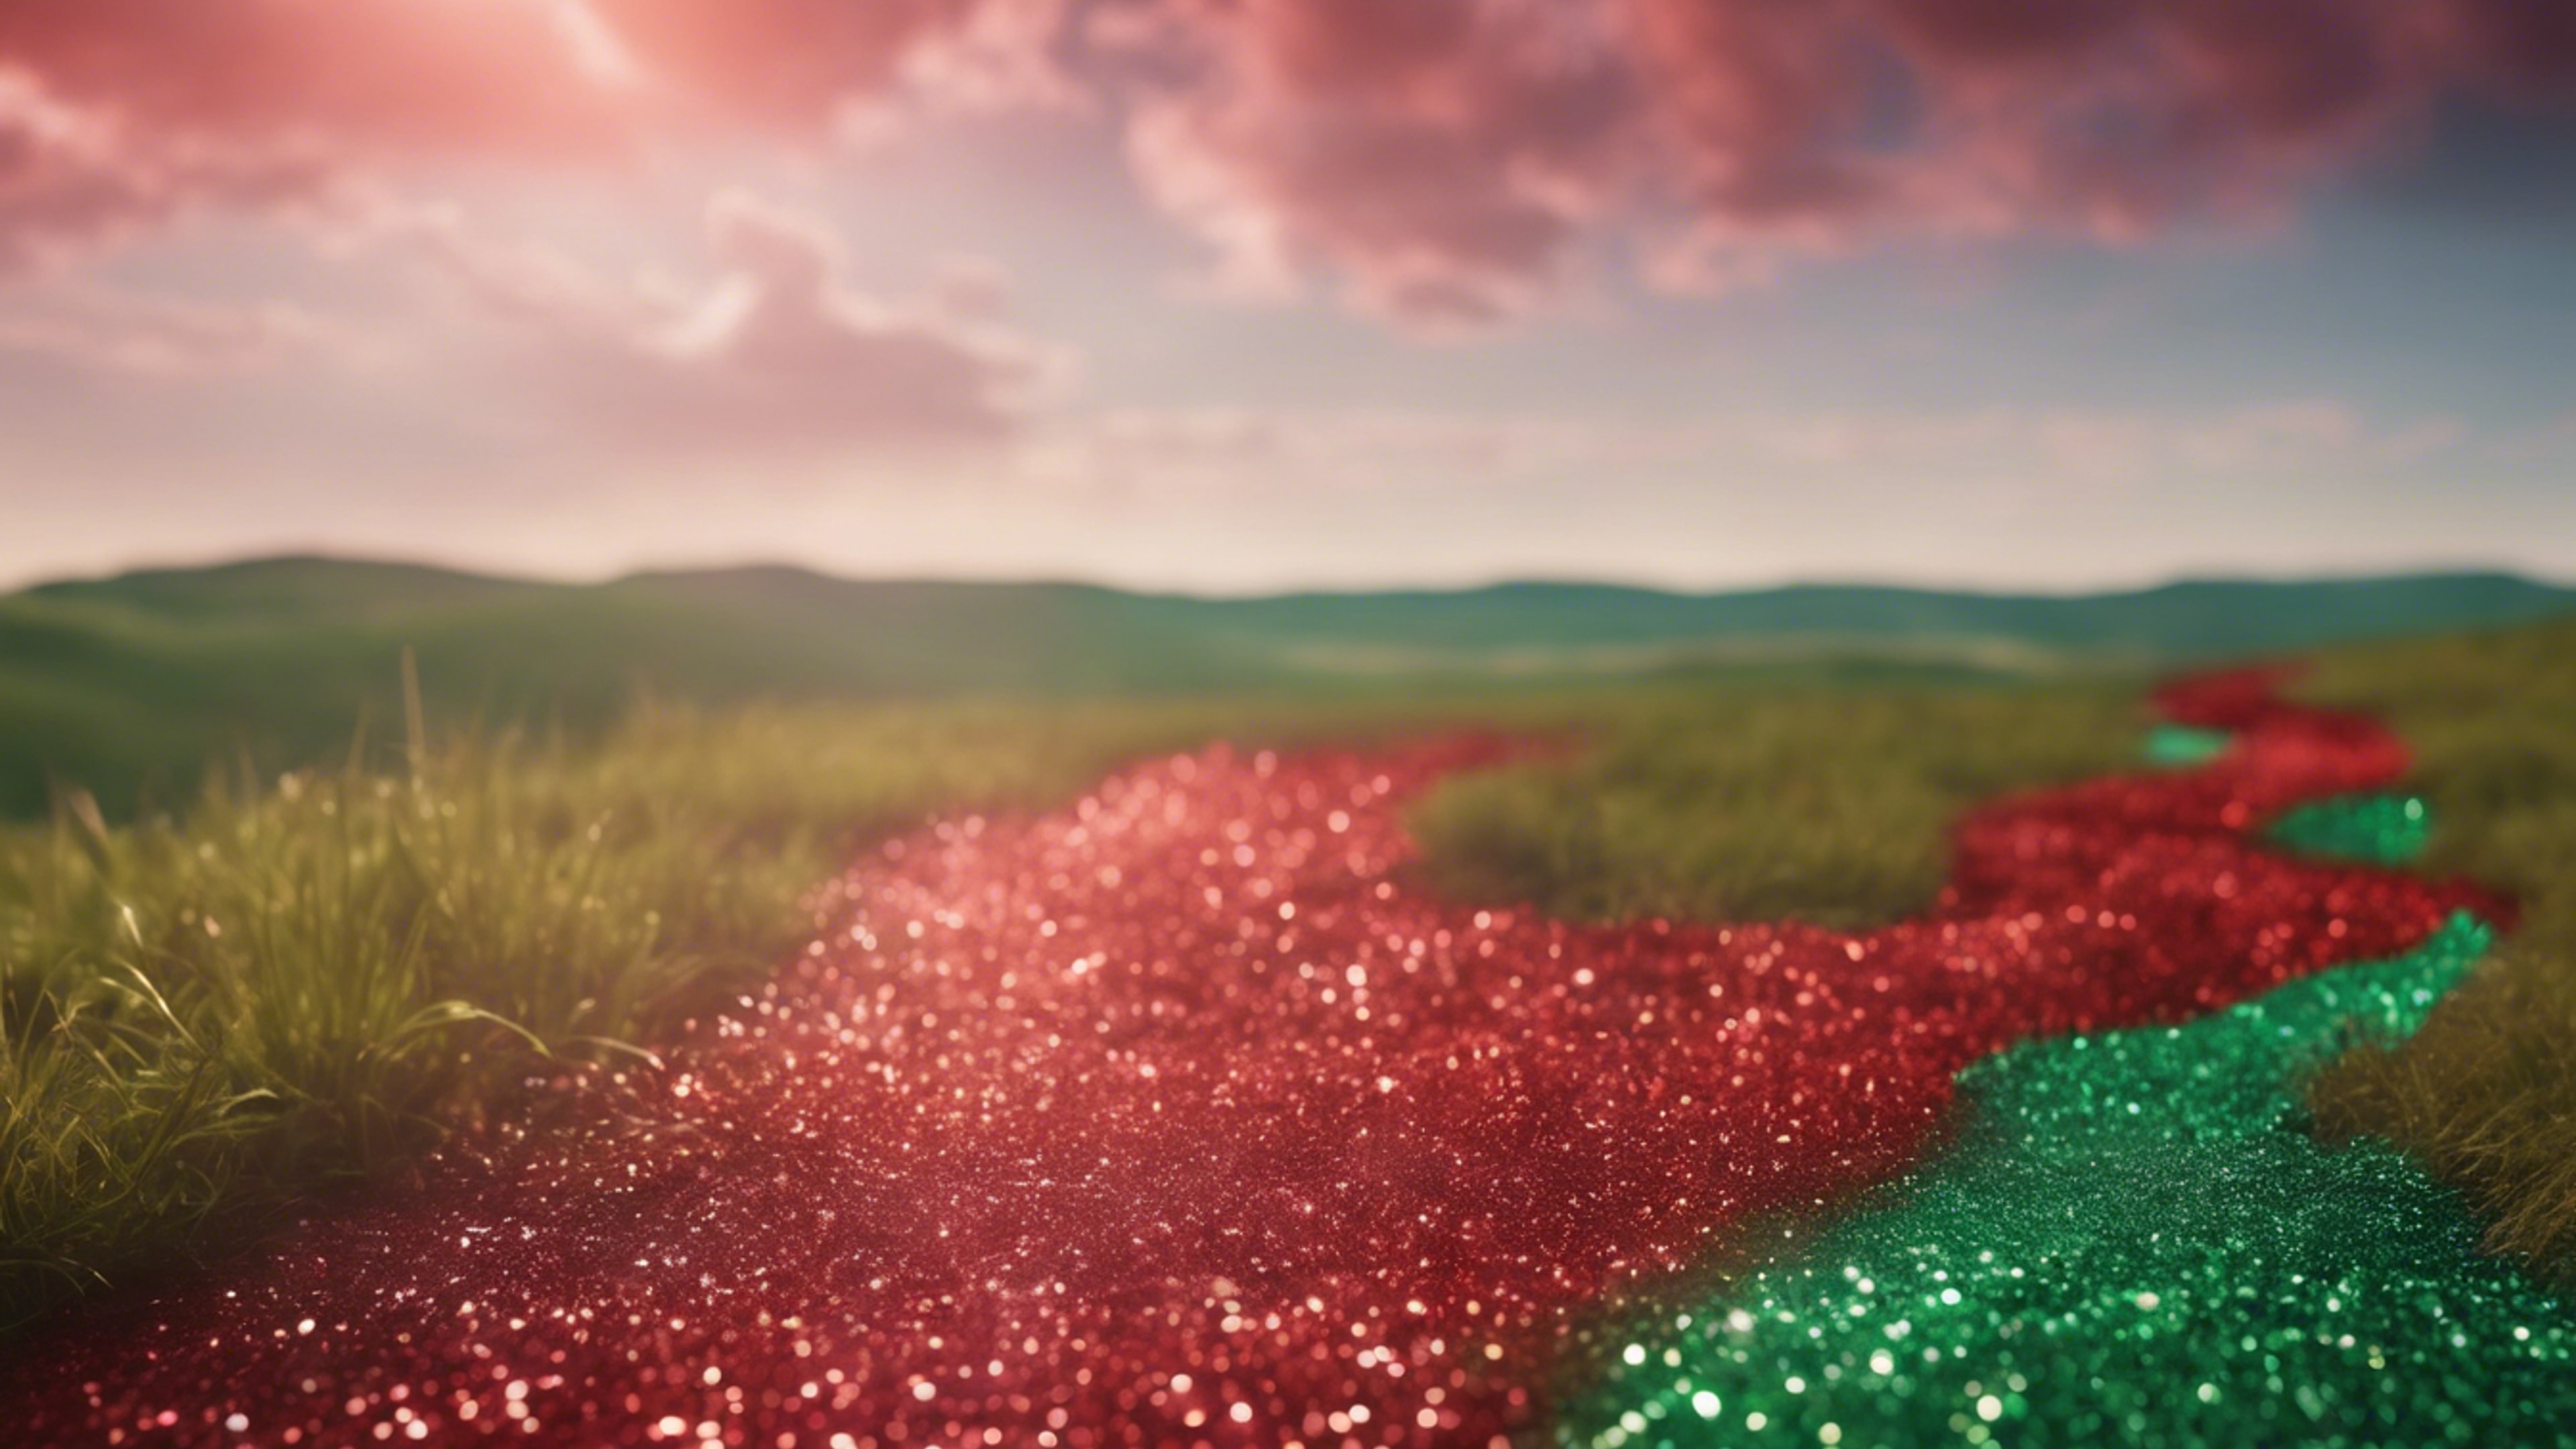 Path of shiny green and red glitter towards the horizon Sfondo[4b670e6c3f1f43adb6d1]